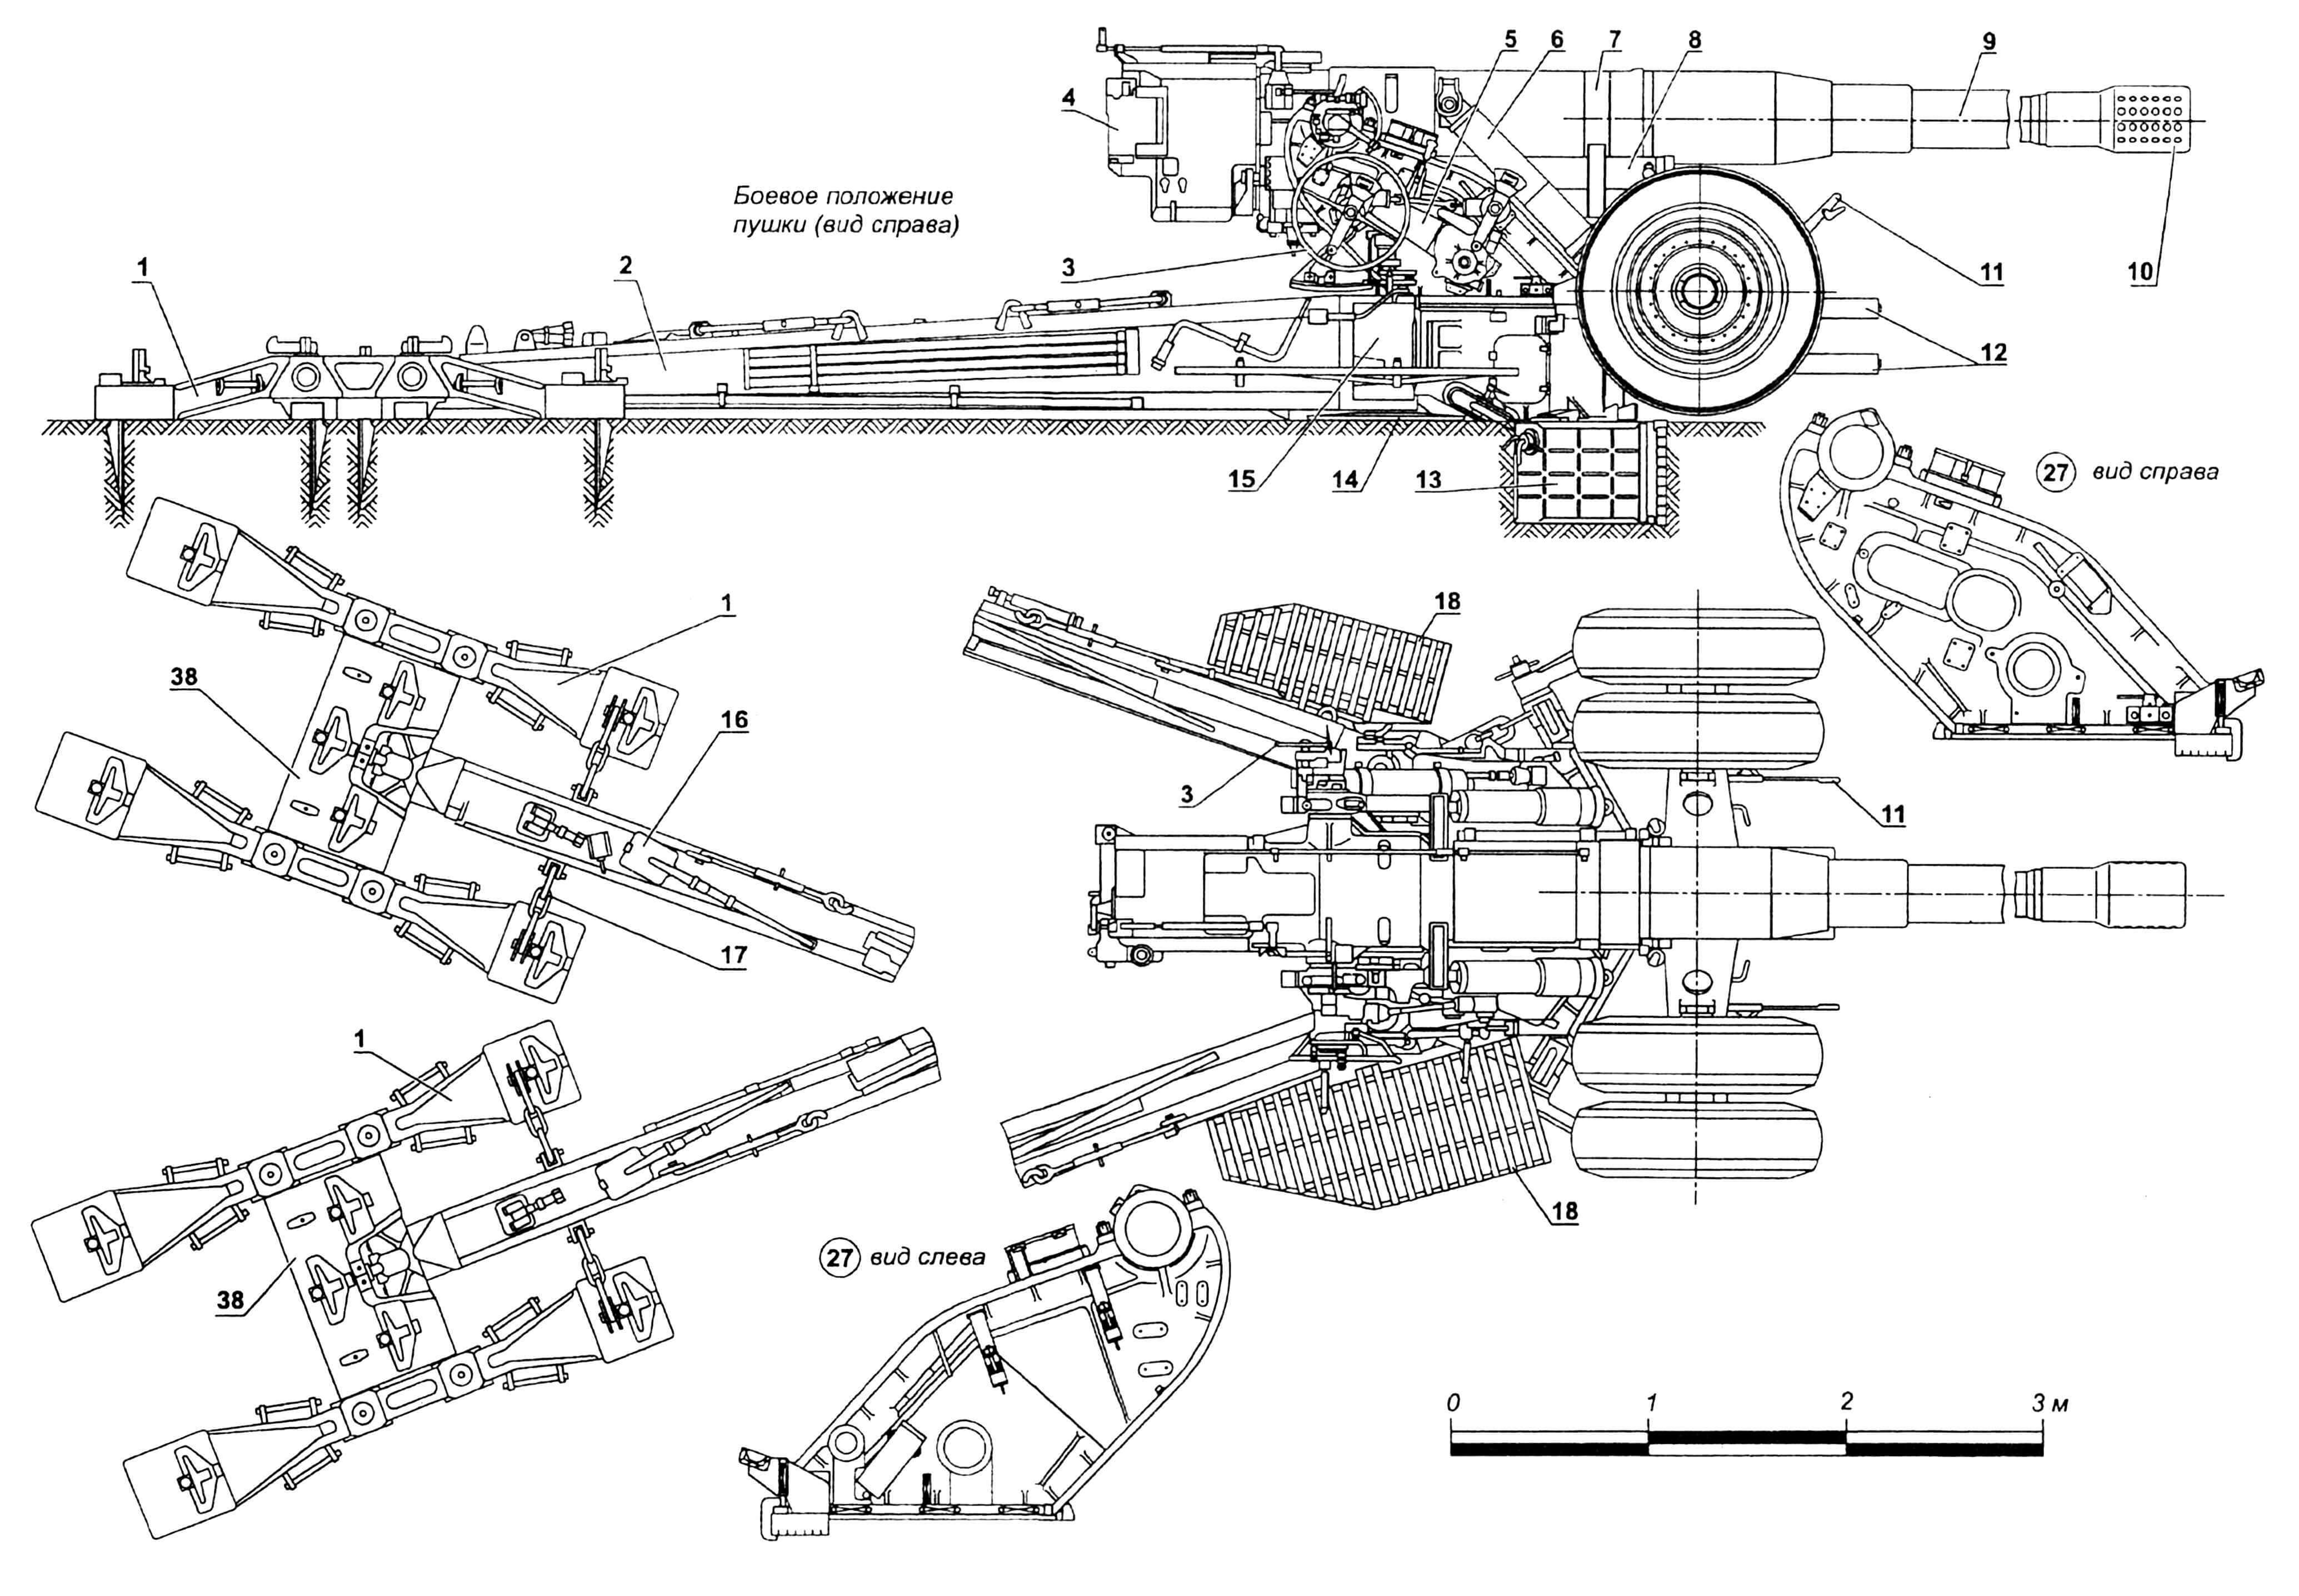 180-мм пушка С-23: 1 — опоры сошниковые, боковые; 2,26 — станины; 3 — штурвалы наводки орудия; 4 — затвор, 5 — опора подъемного механизма; 6,20 — механизмы подъемные; 7 — люлька; 8 — накатник; 9 — ствол; 10 — тормоз дульный; 11 — тормоза ручные; 12 — торсионы заднего хода; 13 — балка специальная; 14 — опоры гидравлического подъемника; 15 — подъемник гидравлический; 16 — лопата саперная (2 шт.); 17 — цепь; 18 — площадки боевого расчета; 19 — чехол; 21 — кронштейн крепления орудия «по-походному»; 22 — тандеры (4 шт.); 23 — колесо переднего хода; 24 — дышло; 25 — тягач; 27 — станок верхний; 28 — рычаги заднего хода, поперечные; 29 — гидробак; 30 — рычаг переднего хода, поперечный; 31 — торсион переднего хода (2 шт.); 32 — тяга рулевая; 33 — тяги регулировки развала колес; 34 — качалка регулировки развала колес; 35 — упор; 36 — рычаг поперечный, нижний; 37 — коробка лобовая; 38 — опоры сошниковые, центральные.